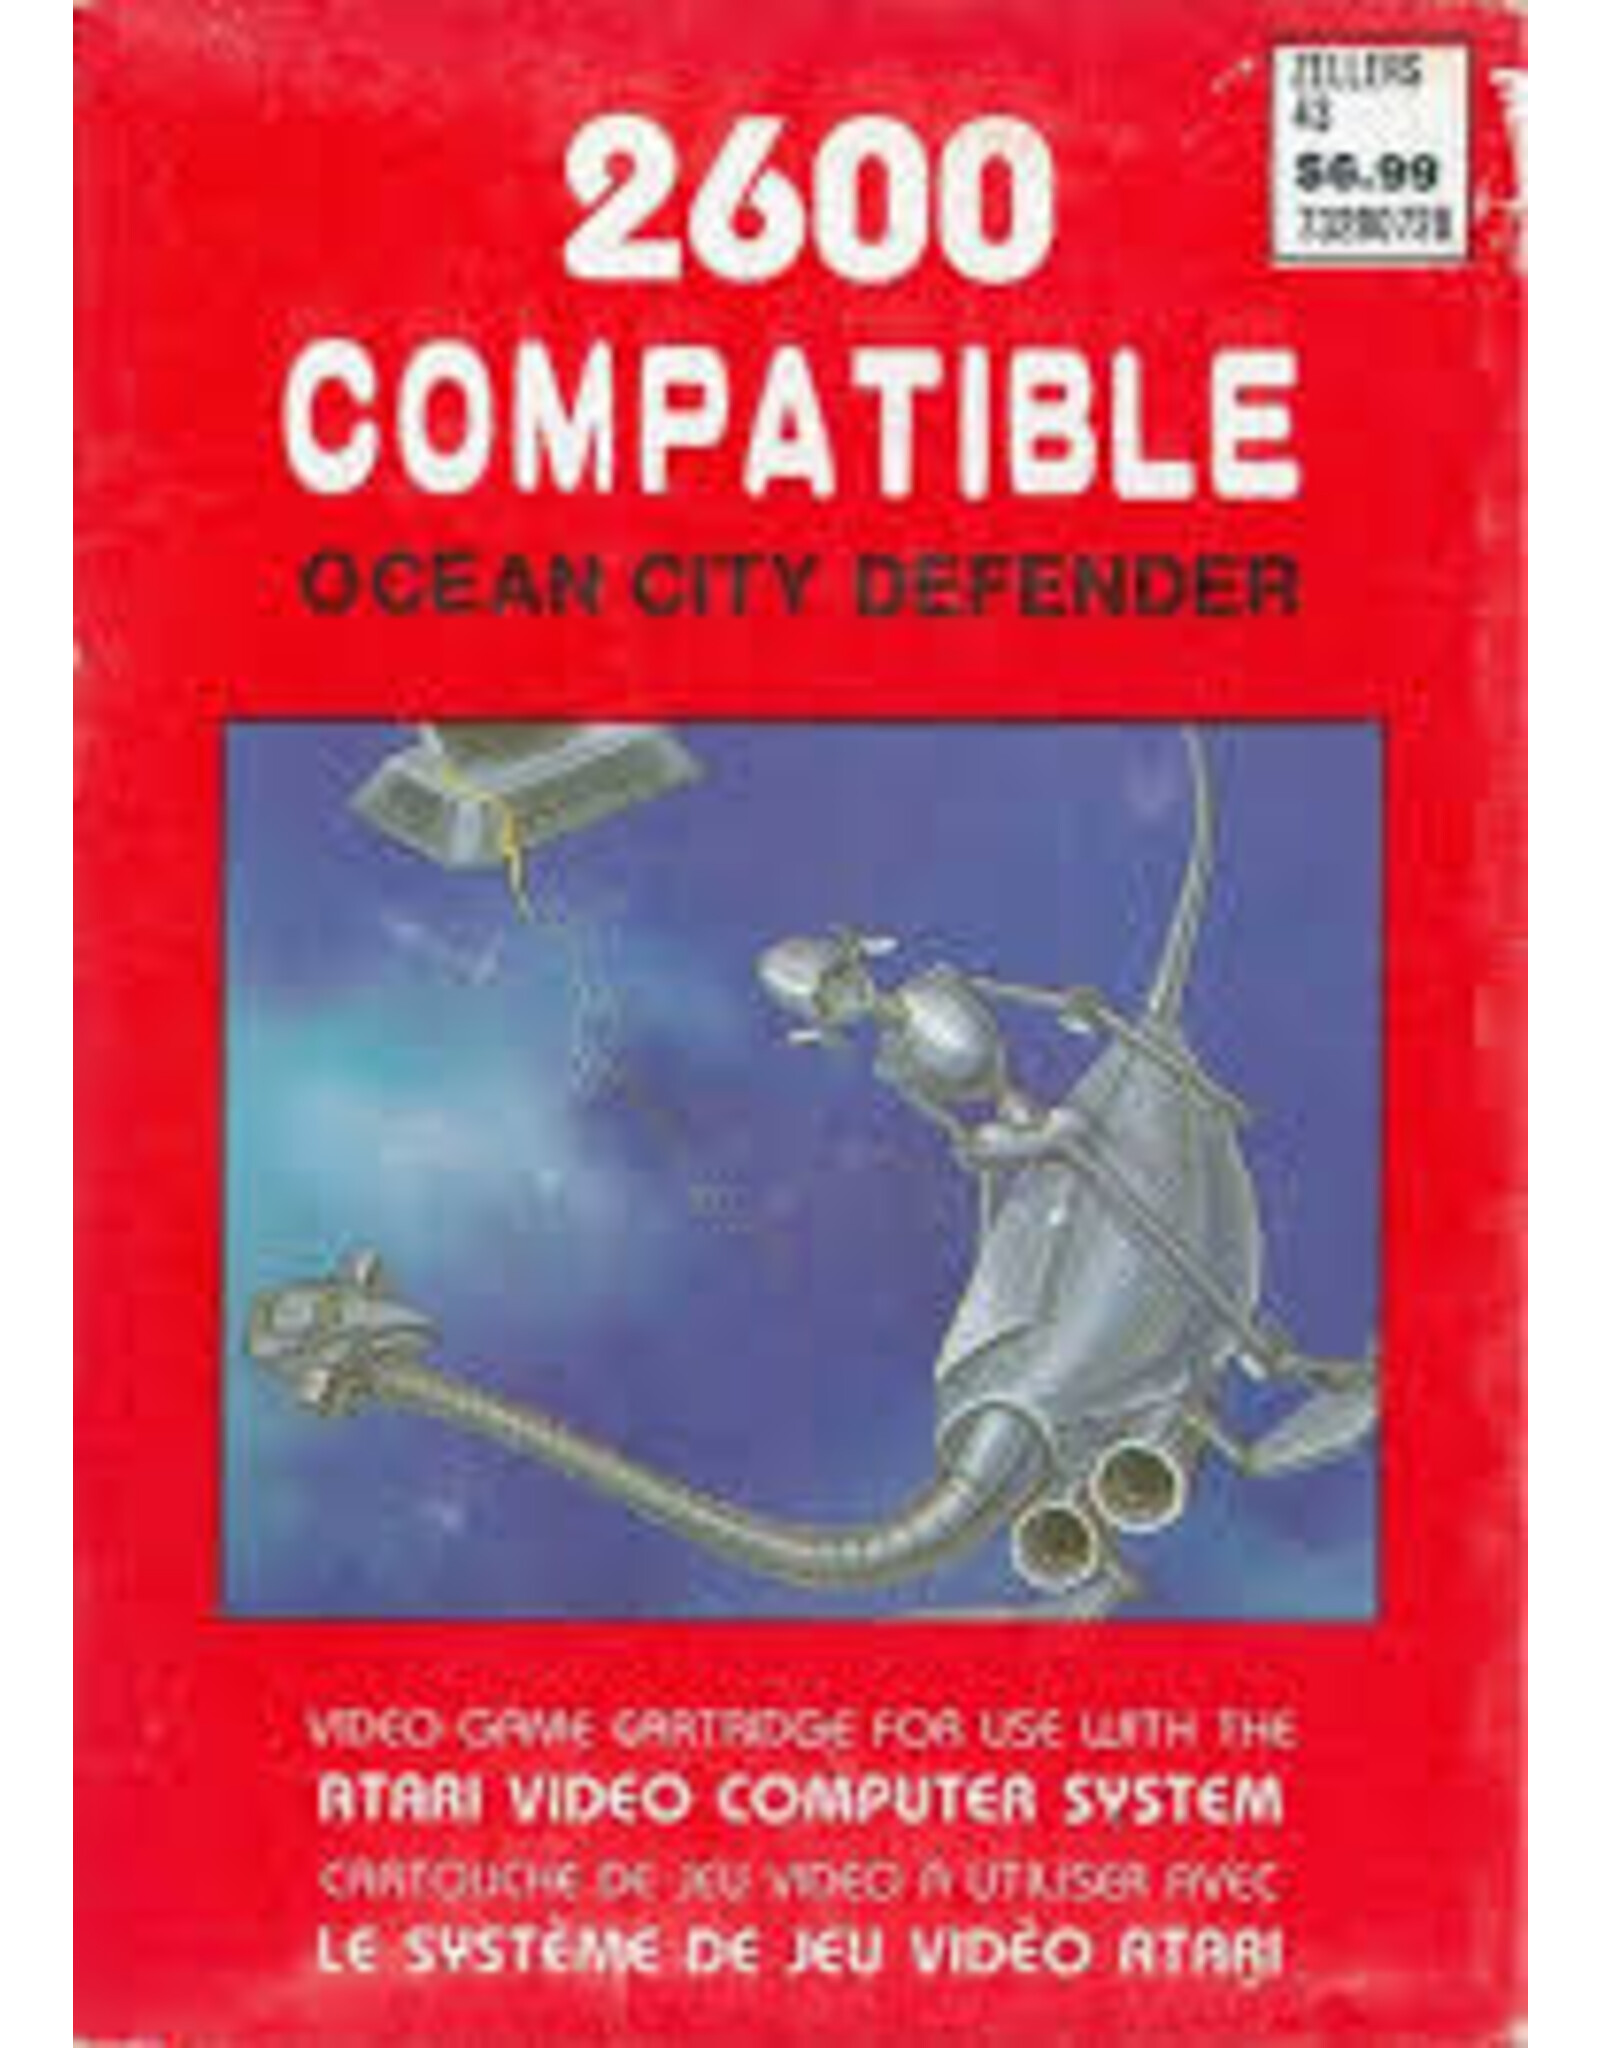 Atari 2600 Ocean City Defender (Cart Only)